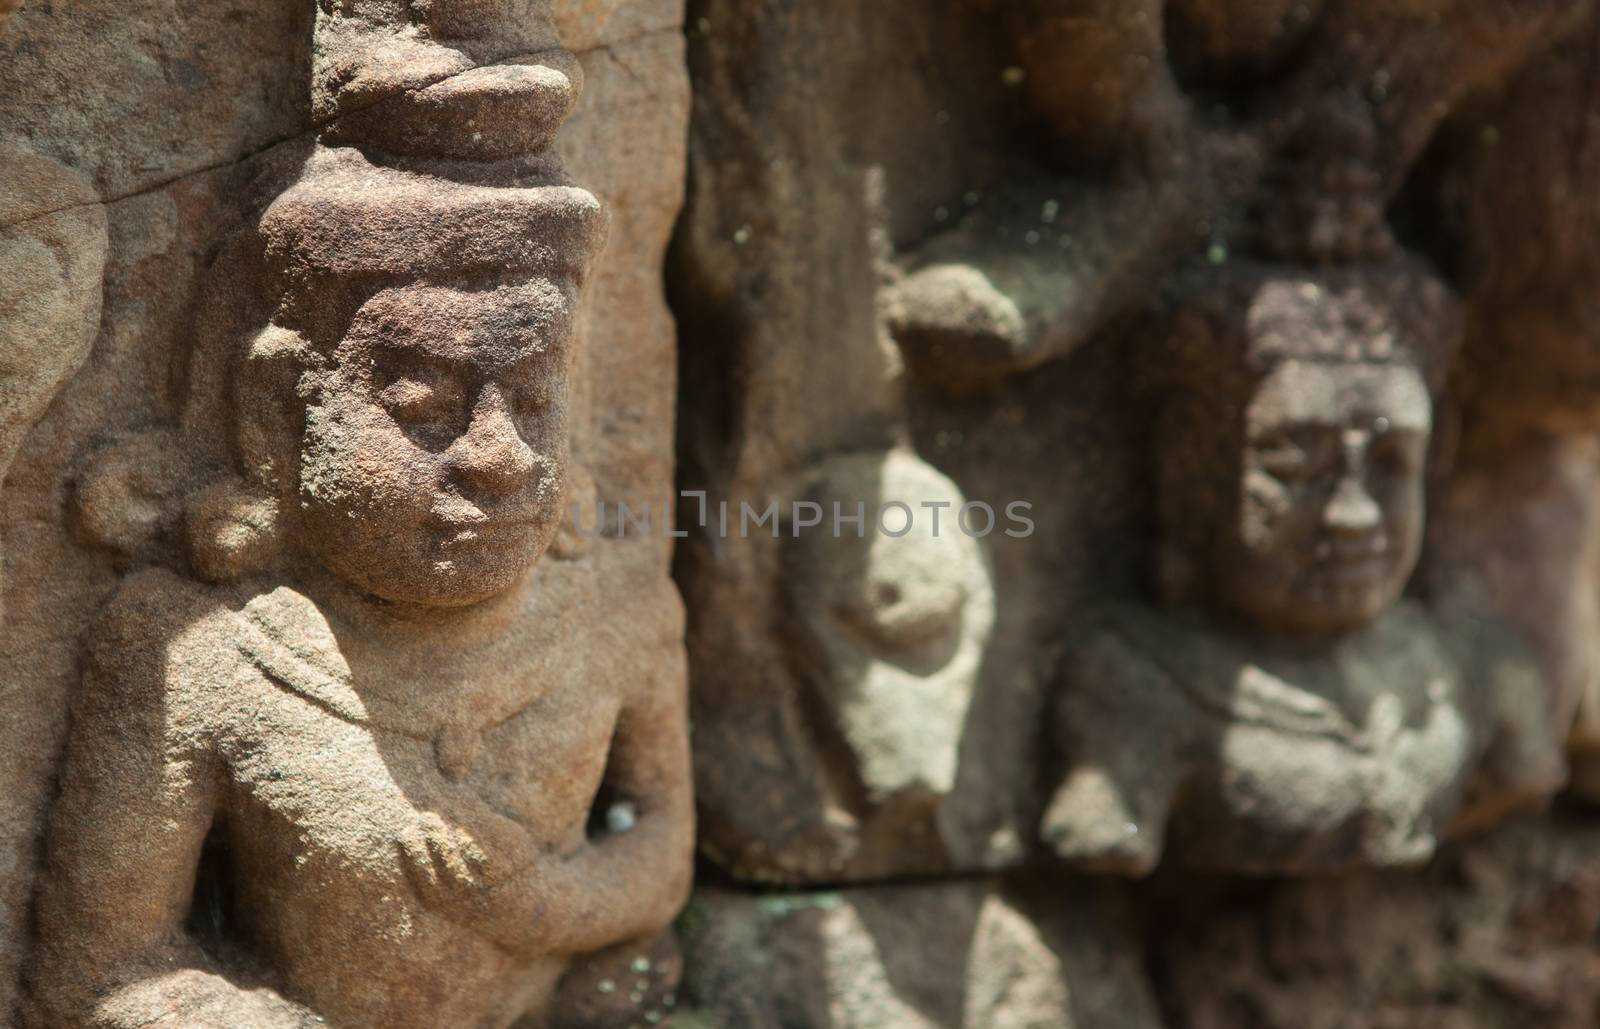 bas-Relief at Angkor Thom showing a hindu god